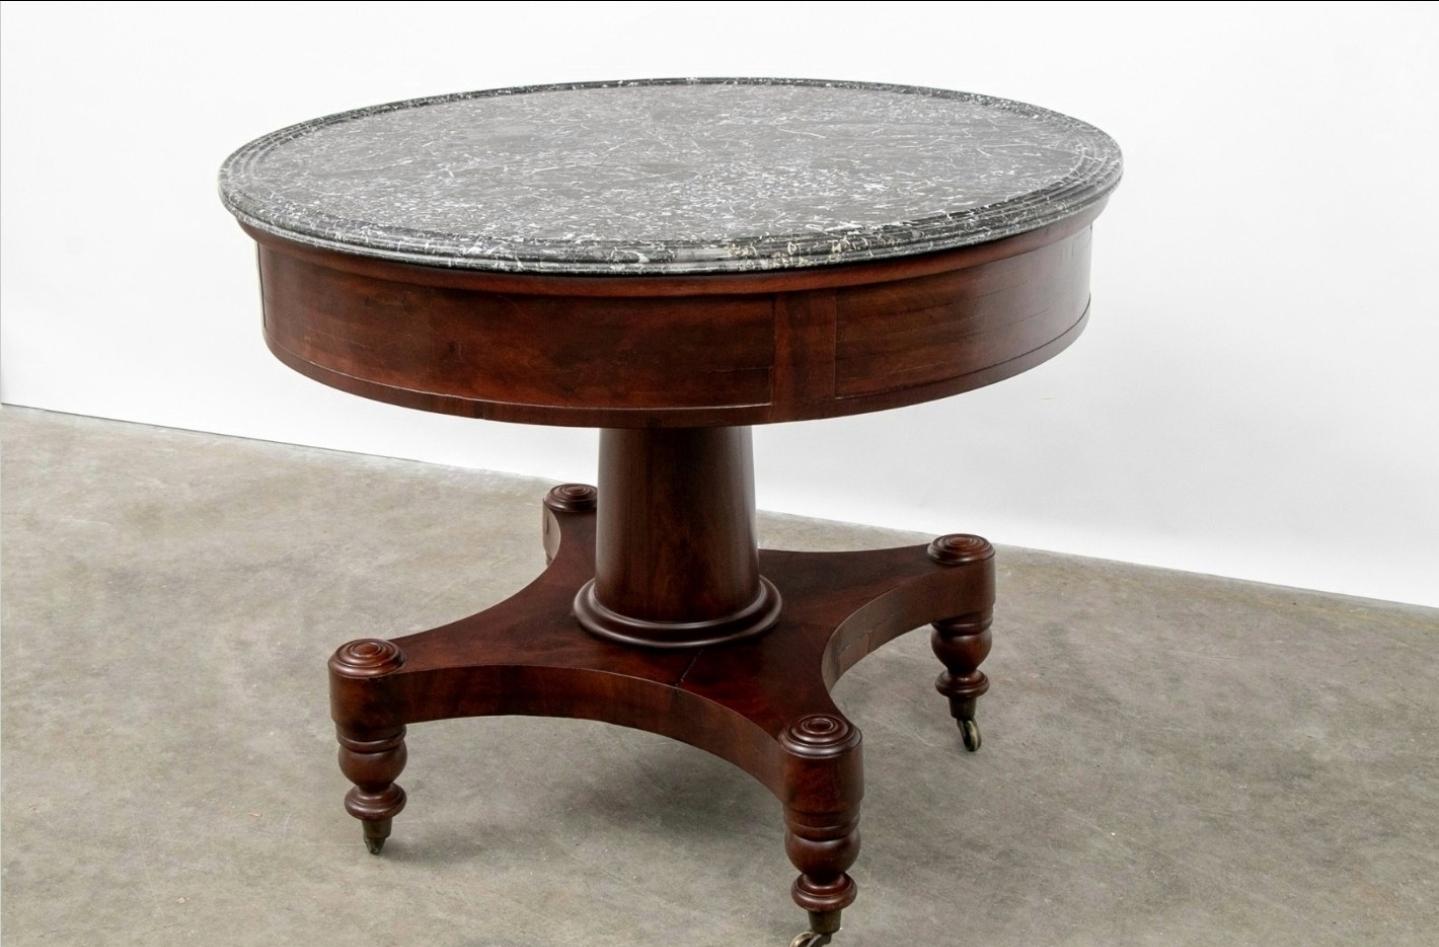 Très beau centre de table à piédestal en acajou, datant de 200 ans, de la période fédérale américaine, Boston Classical, vers 1825.

Fabriqué à la main dans le nord-est des États-Unis au début du XIXe siècle, ce meuble présente un piédestal à